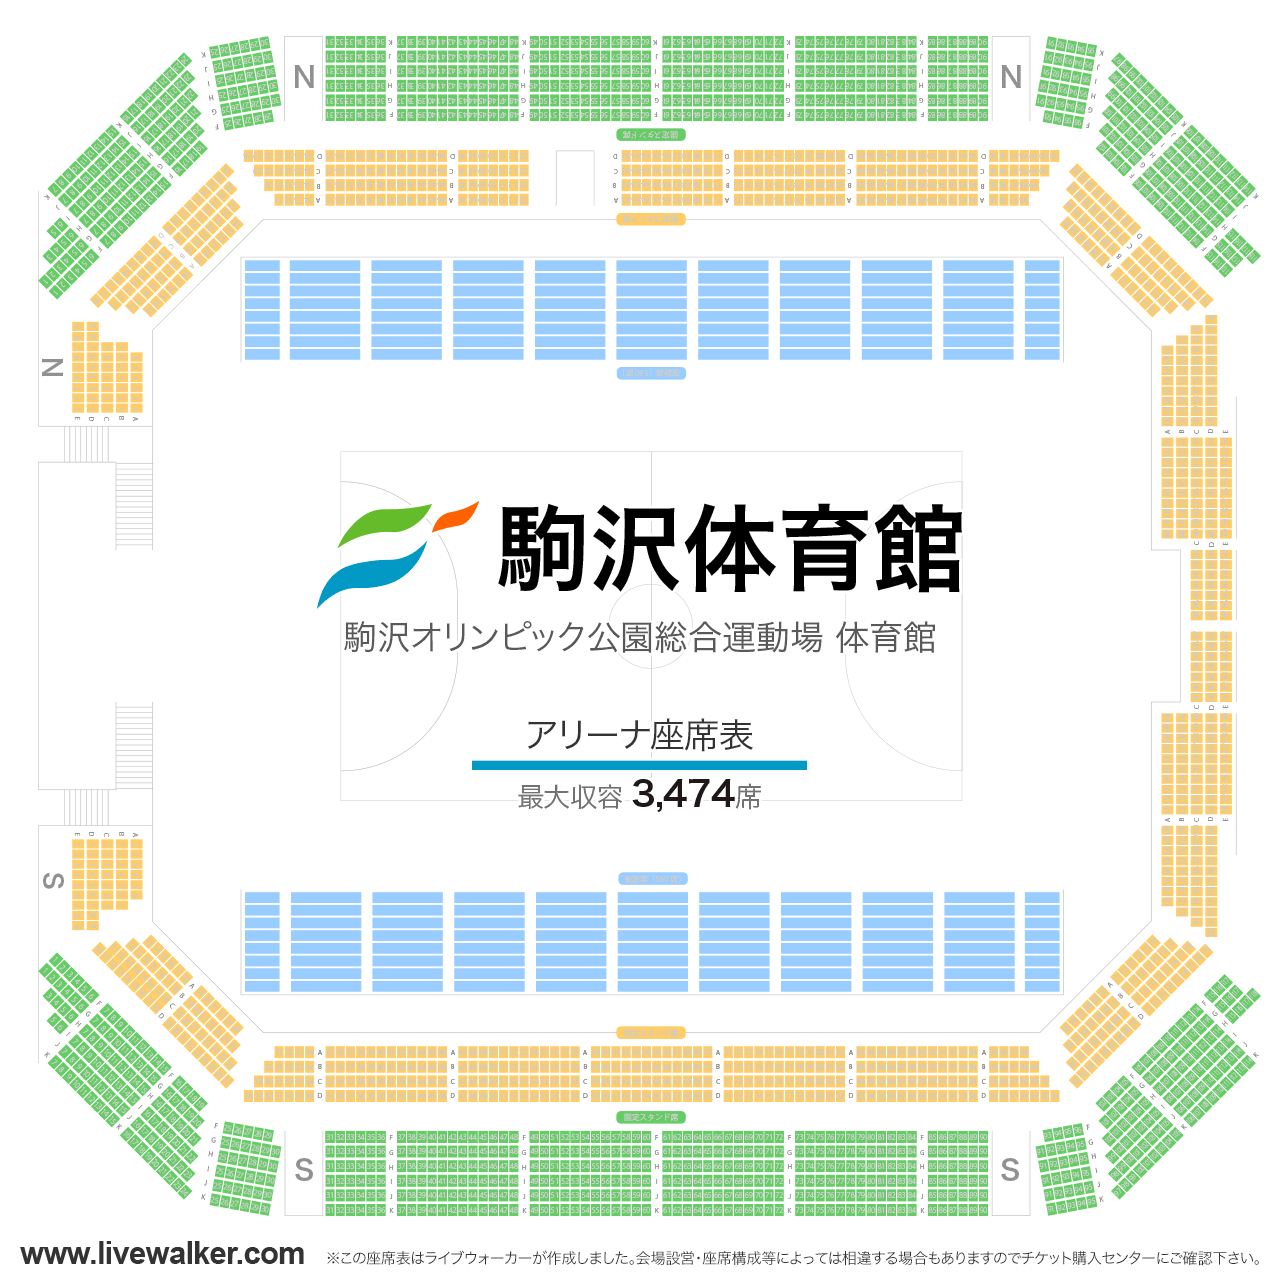 駒沢オリンピック公園体育館アリーナの座席表